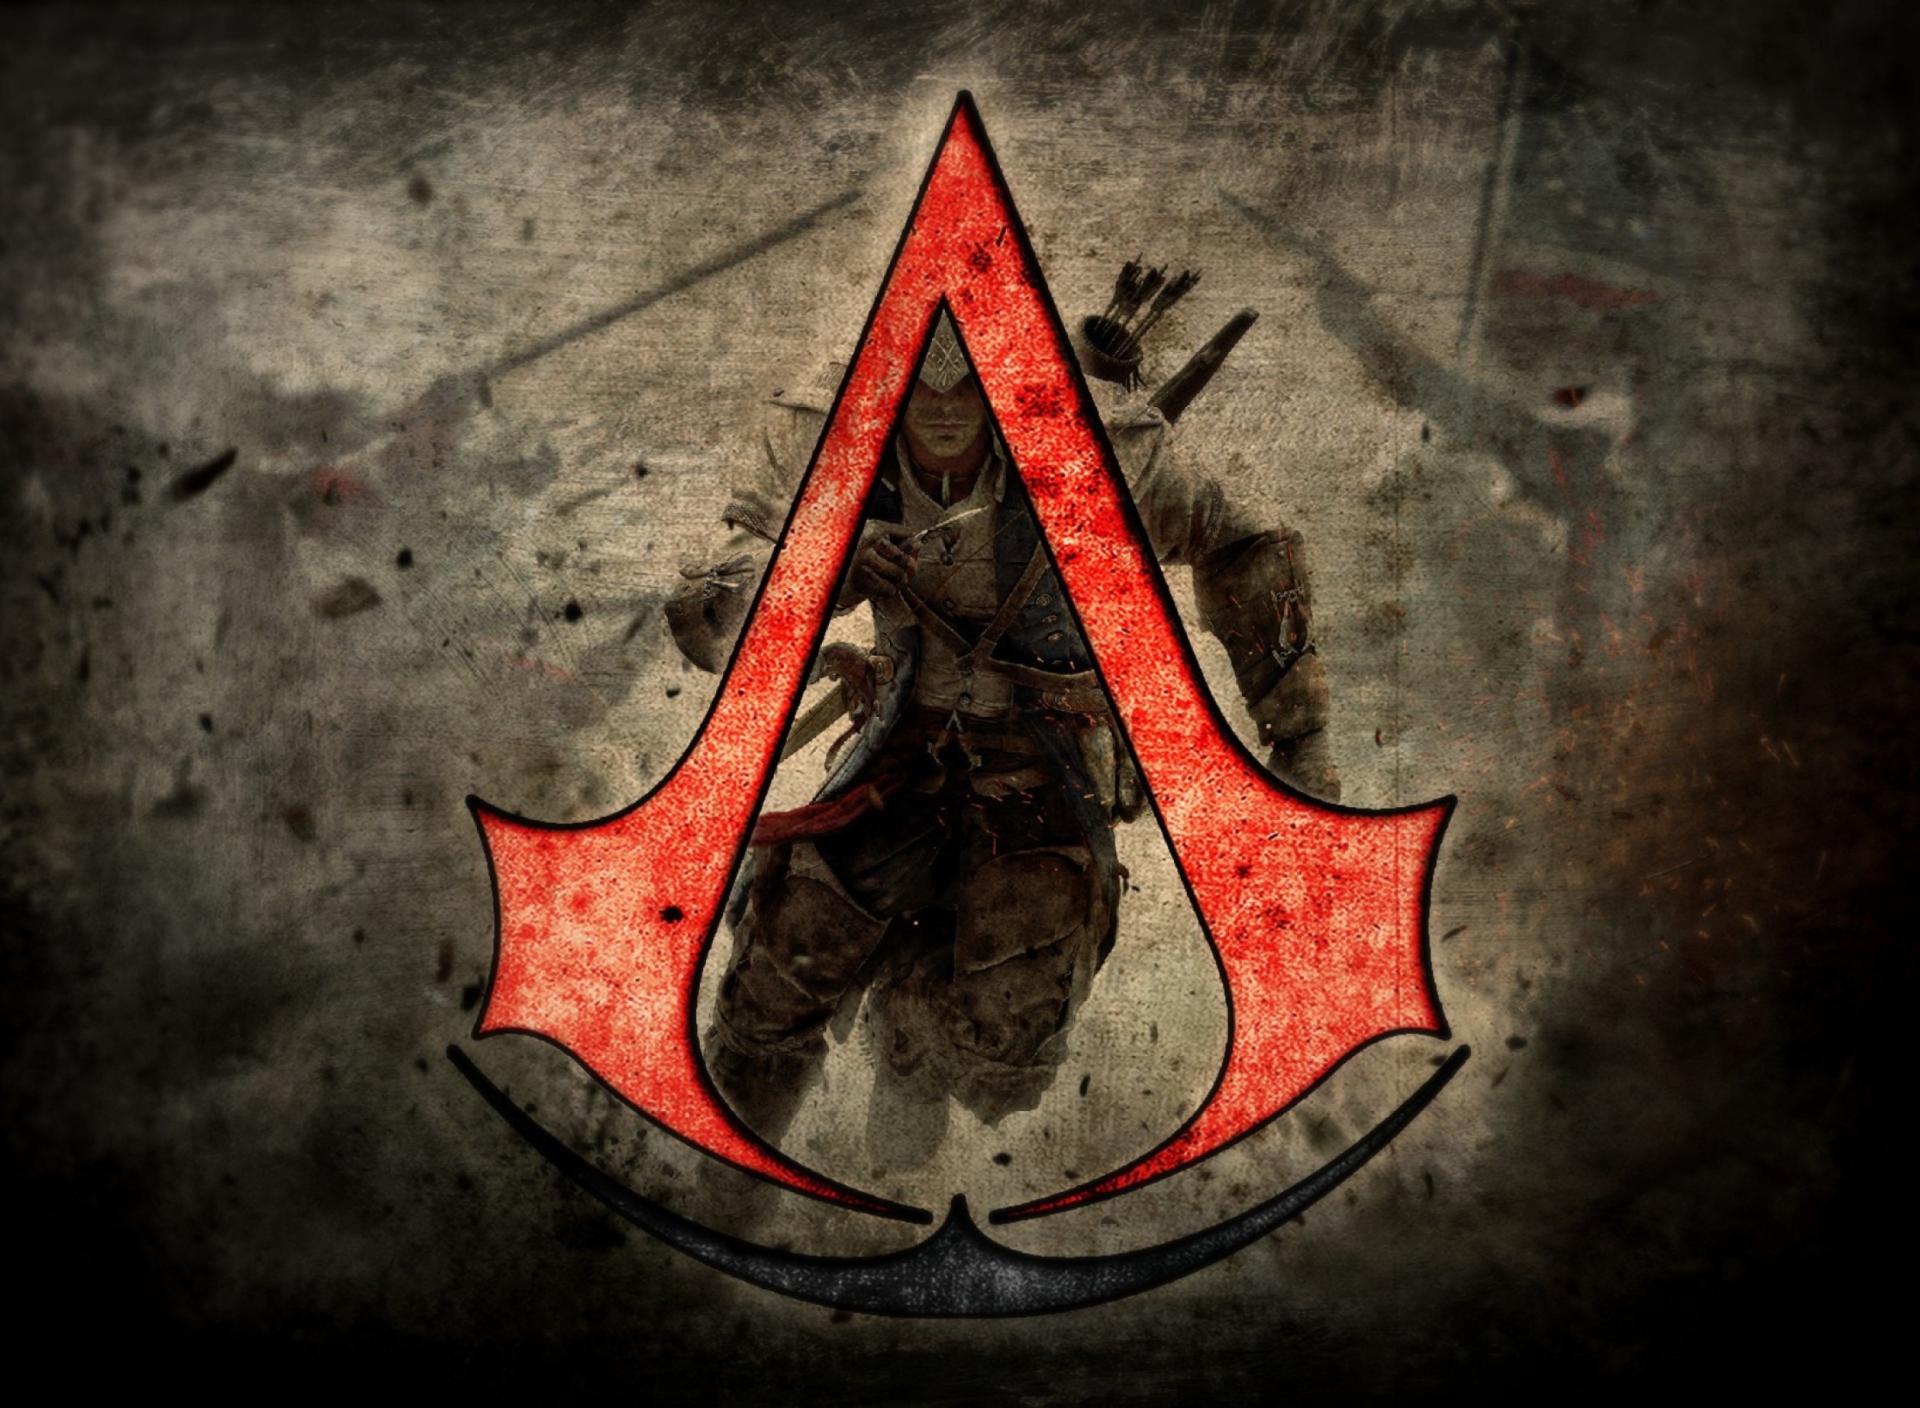 Fondo de pantalla Assassins Creed 1920x1408